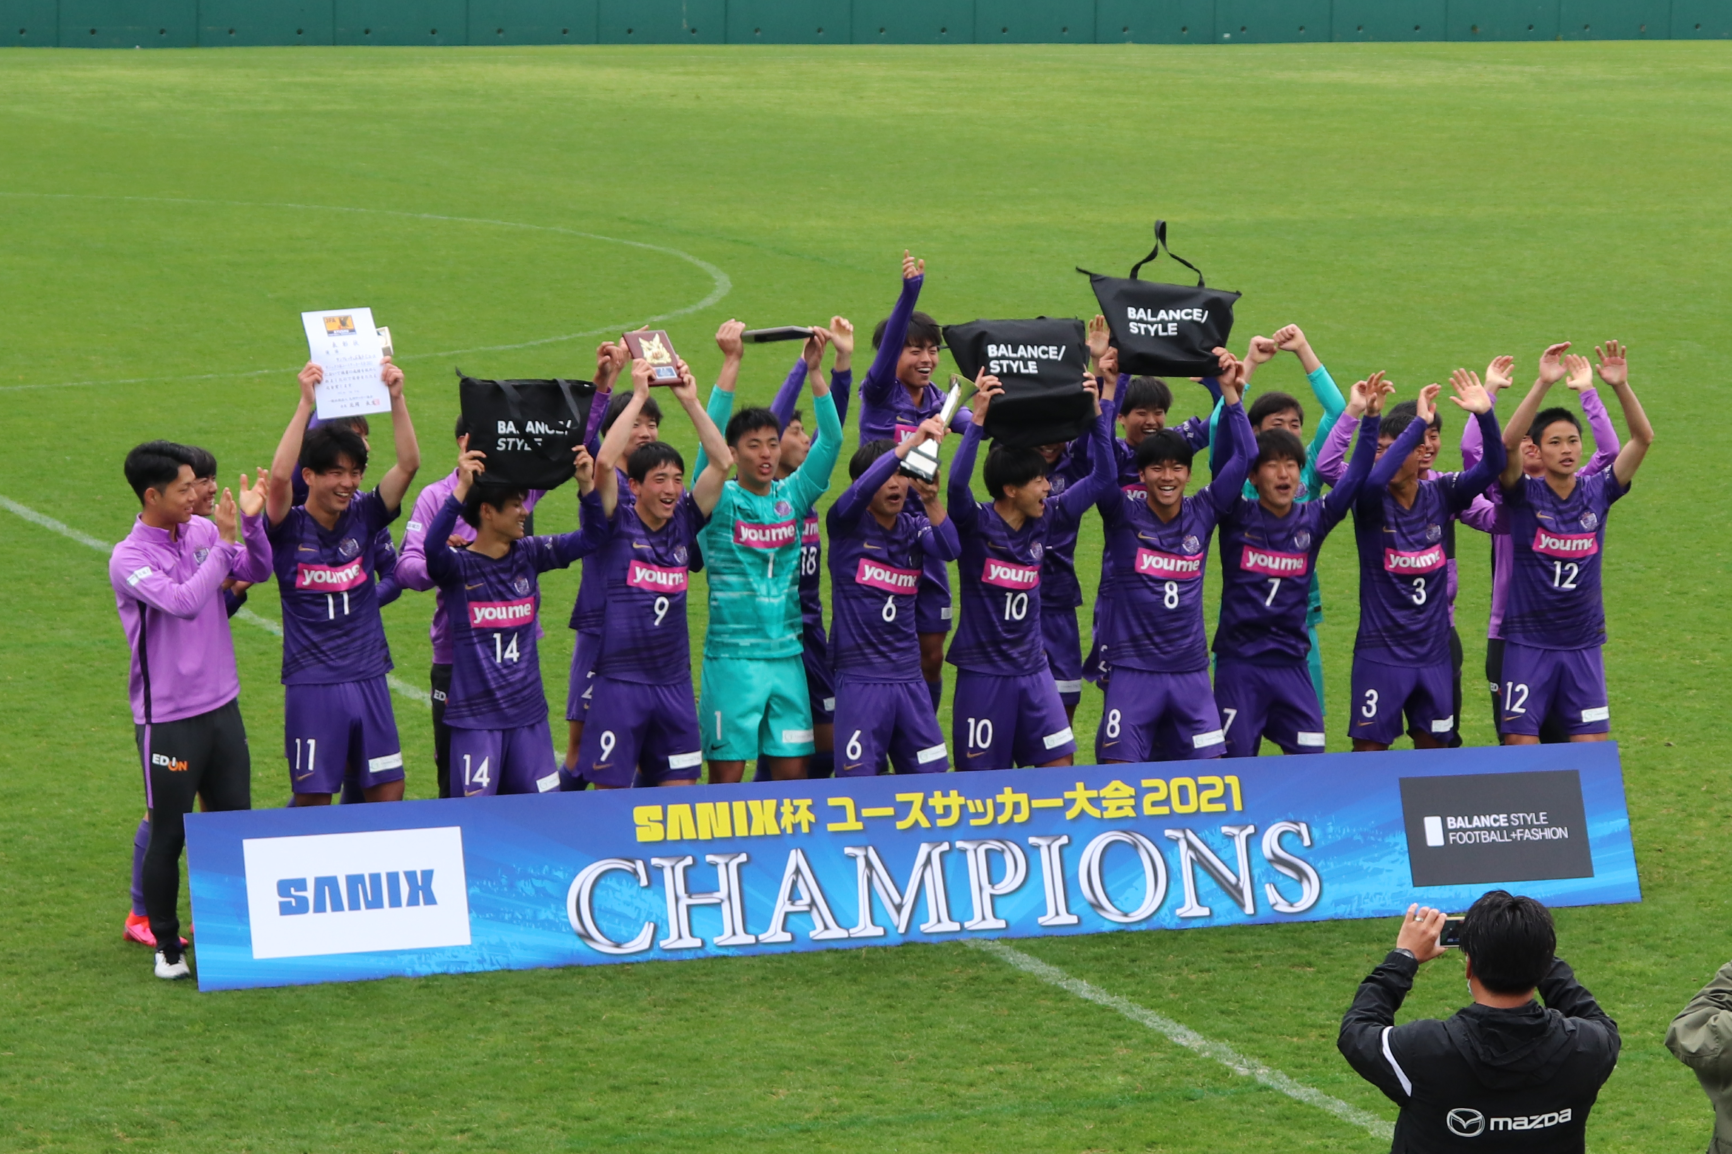 サンフレッチェ広島f Cユースが Sanix Cup International Youth Soccer Tournament 21 を制す 株式会社 堺整骨院のプレスリリース